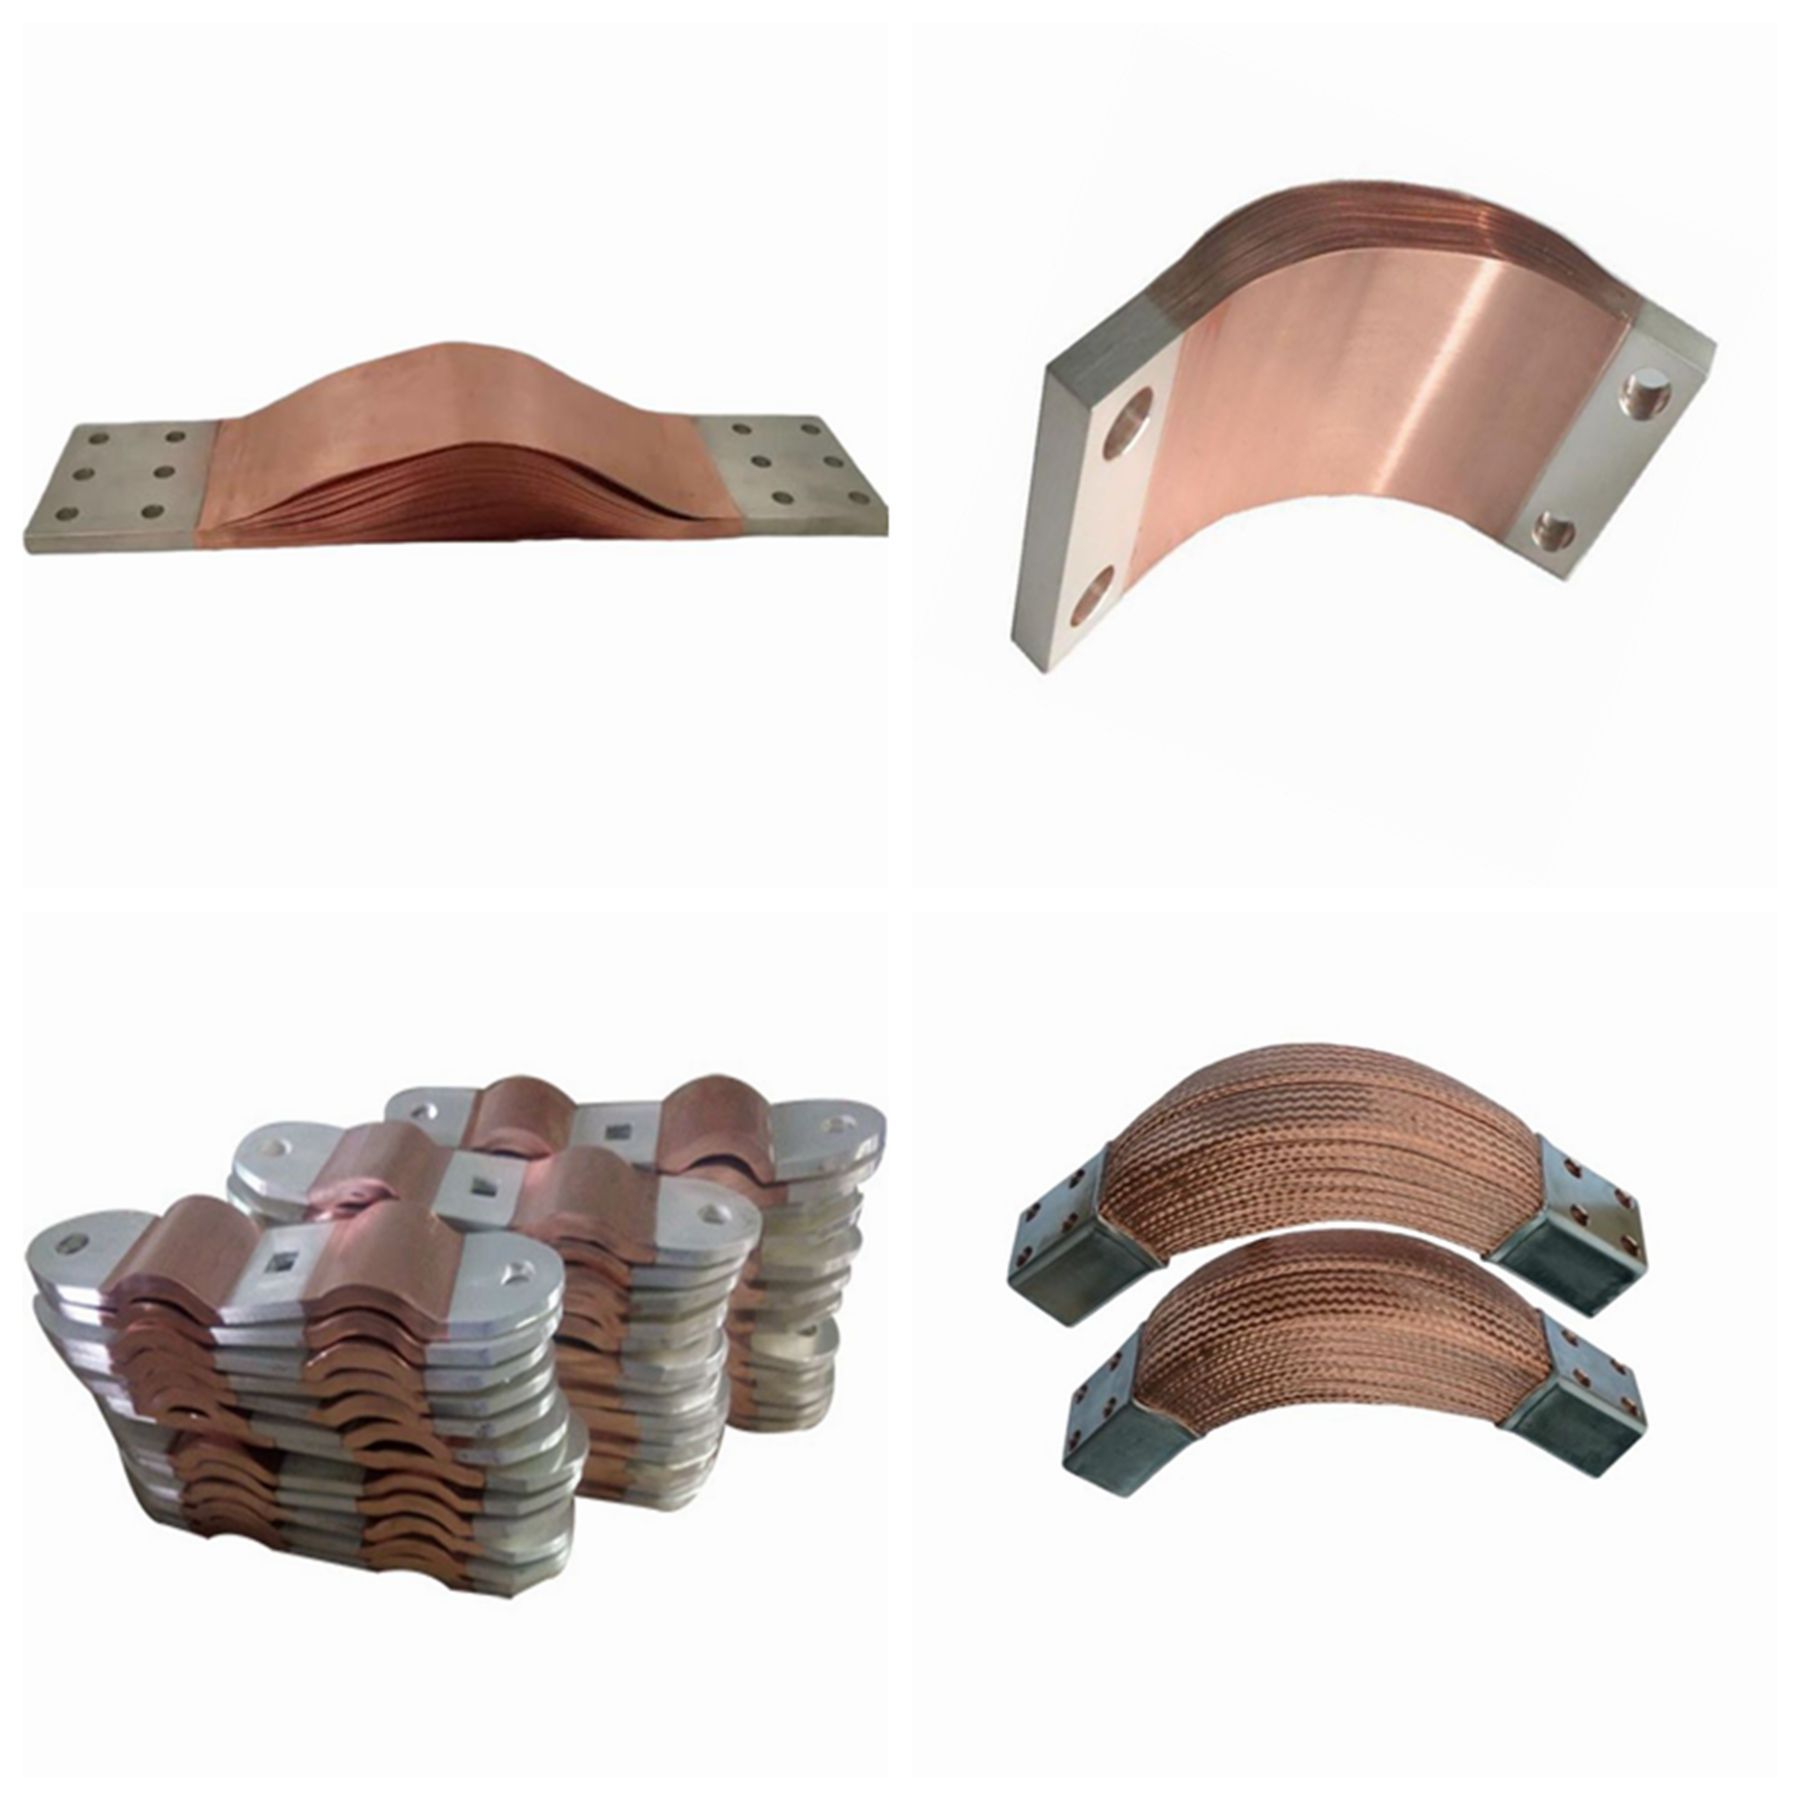 銅箔フレキシブルバスバー: バスバーの変形に対する究極のソリューション